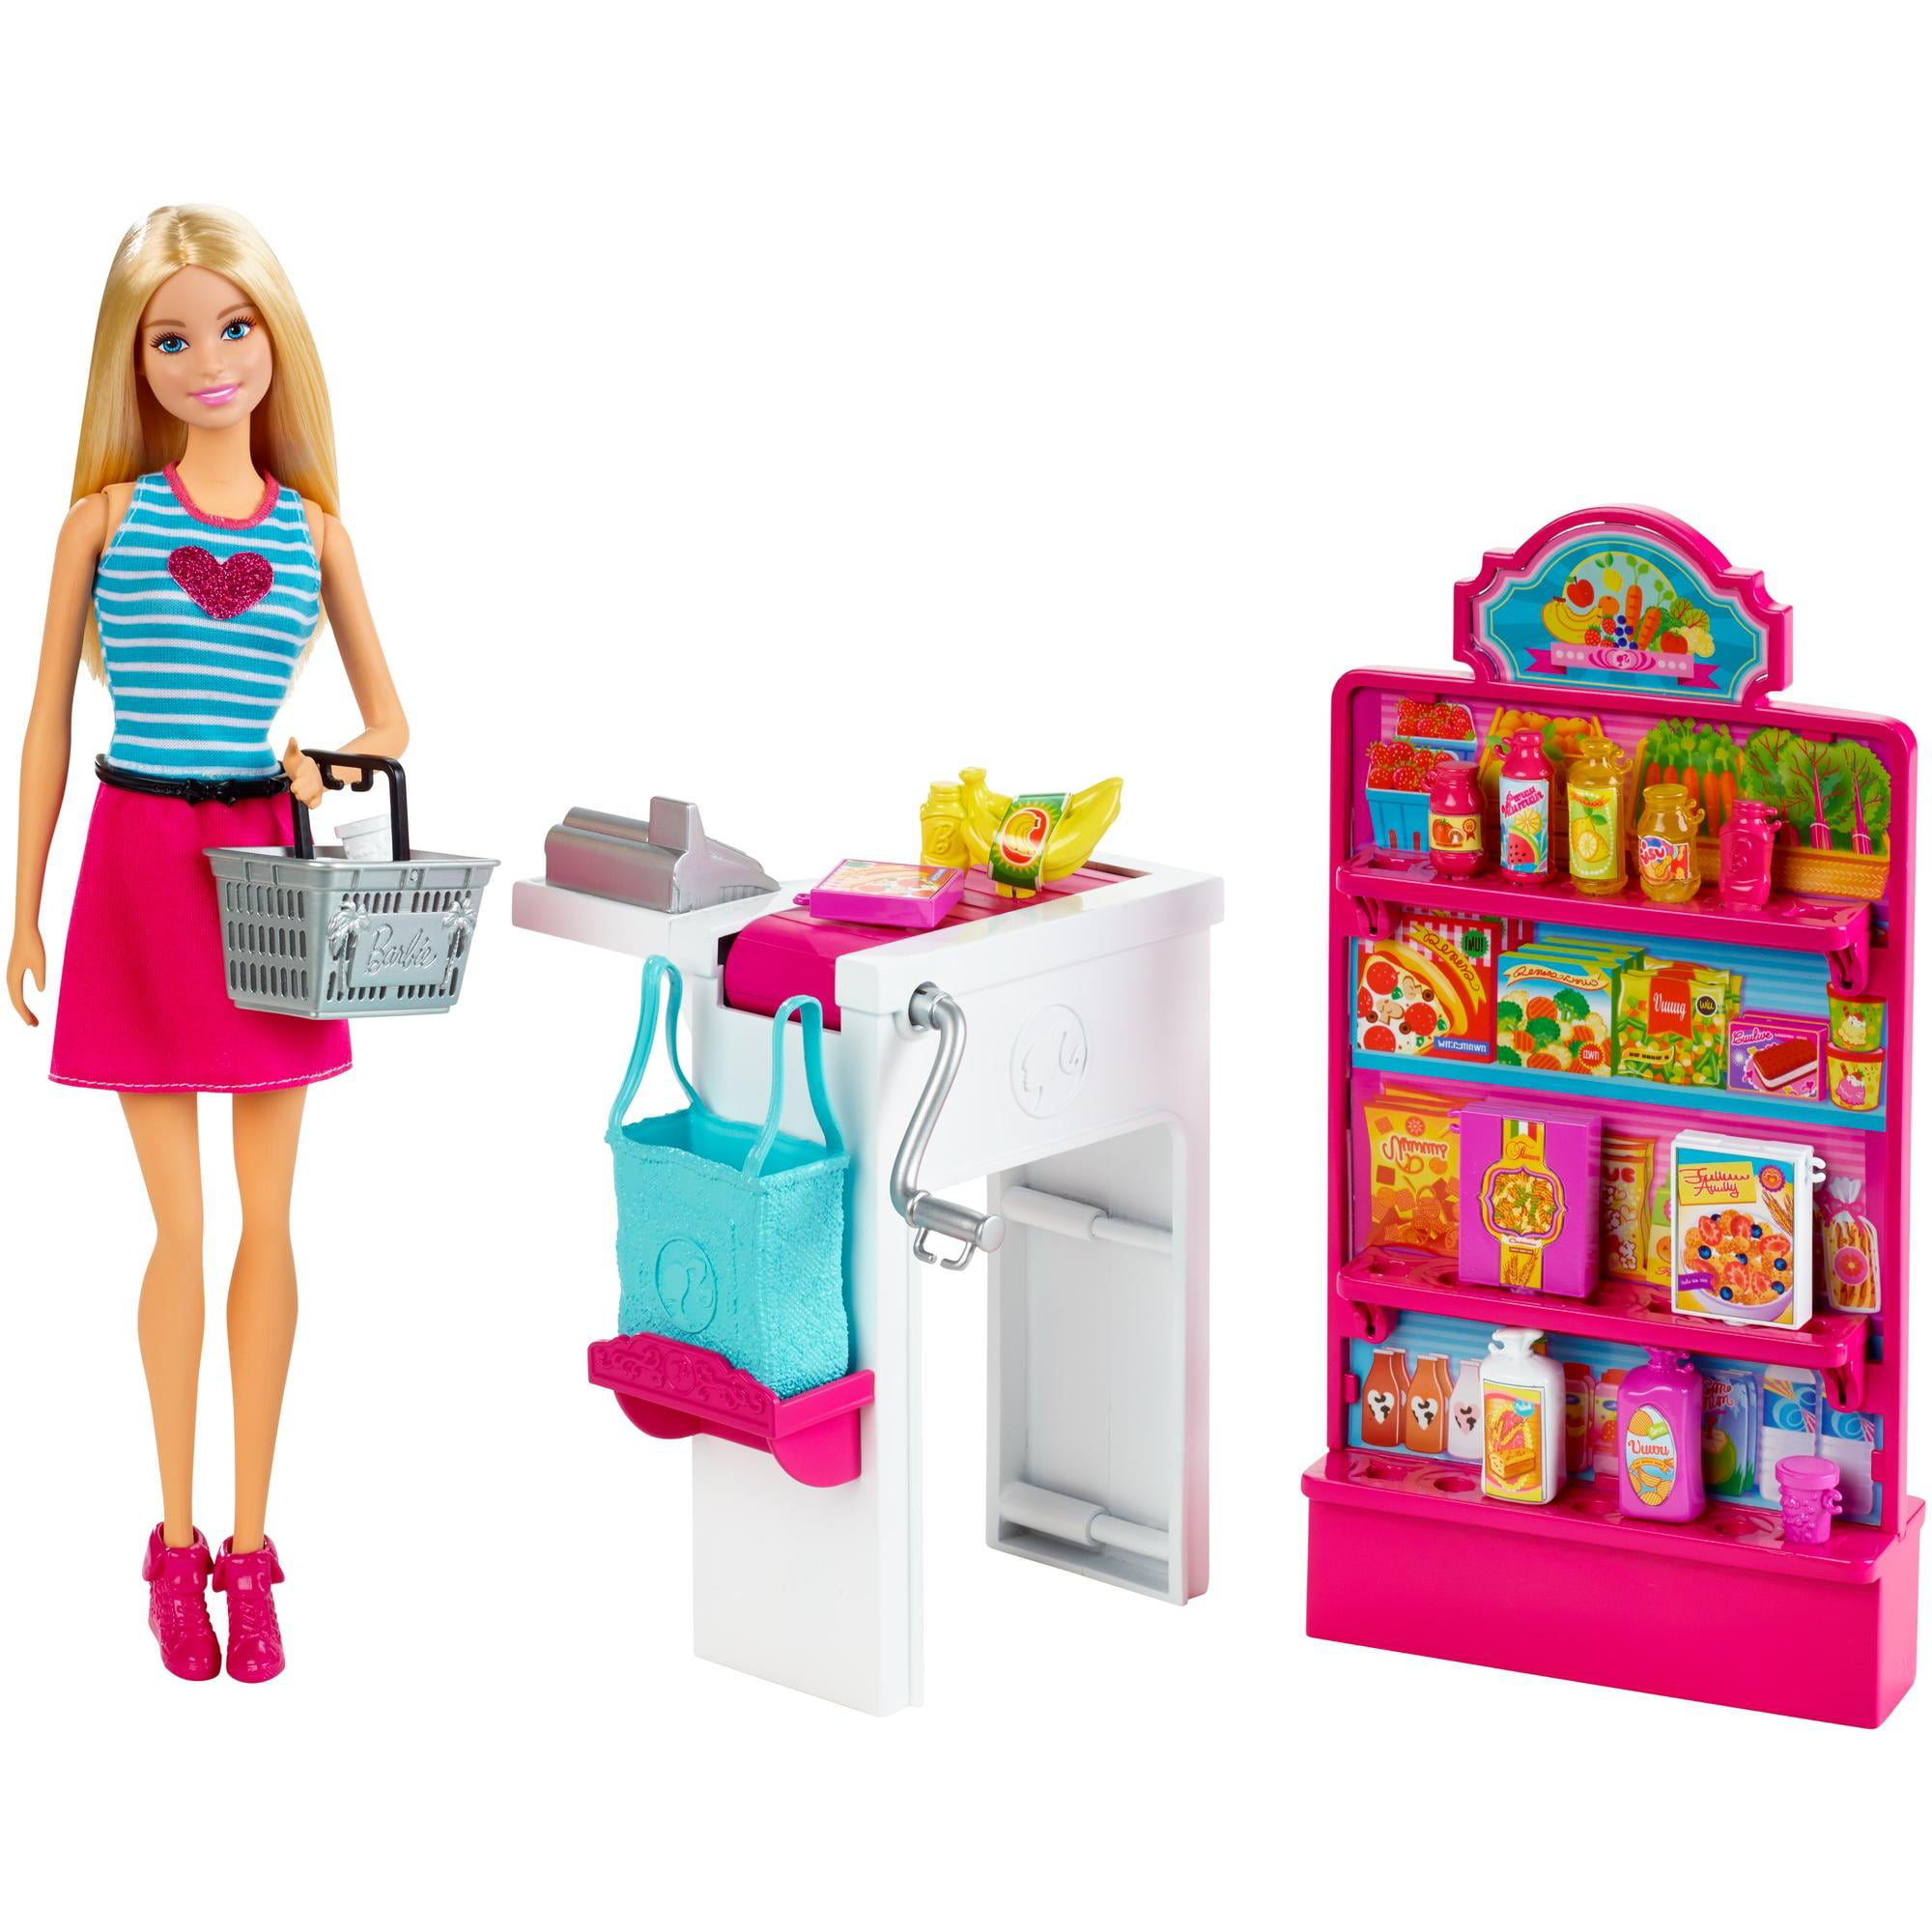 Включи кукла игрушки. Набор Barbie продуктовый магазин Малибу, 29 см, ckp77. Barbie Malibu набор. Куклы Барби плейсет. Игровой набор Barbie продуктовая Лавка.